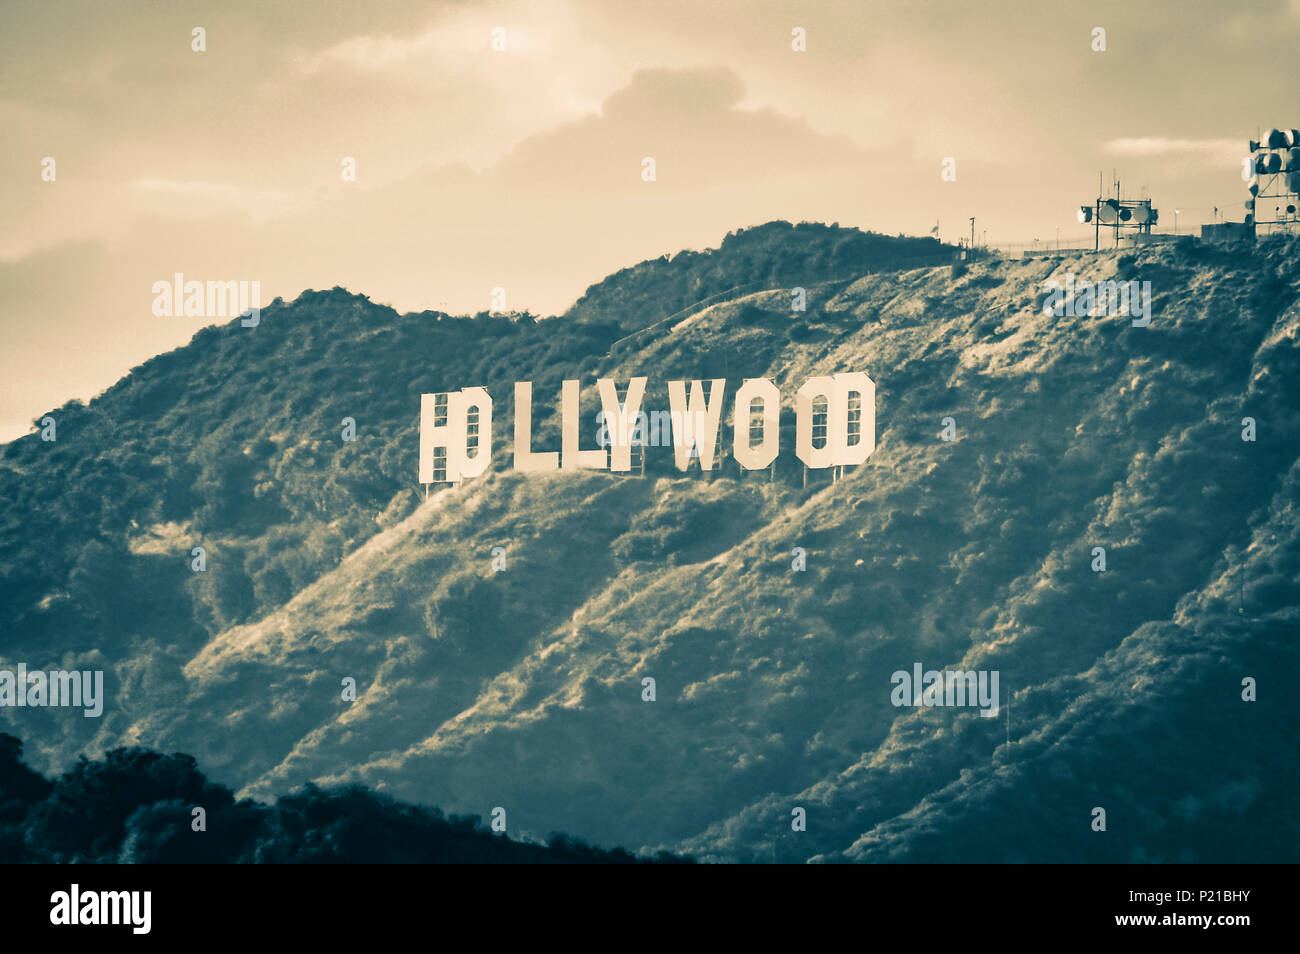 Vue sur le Hollywood Sign, situé sur le mont Lee, à Hollywood Hills, sous un ciel nuageux. Sonorité secondaire de traitement. / Vintage style rétro. Copier l'espace. Banque D'Images